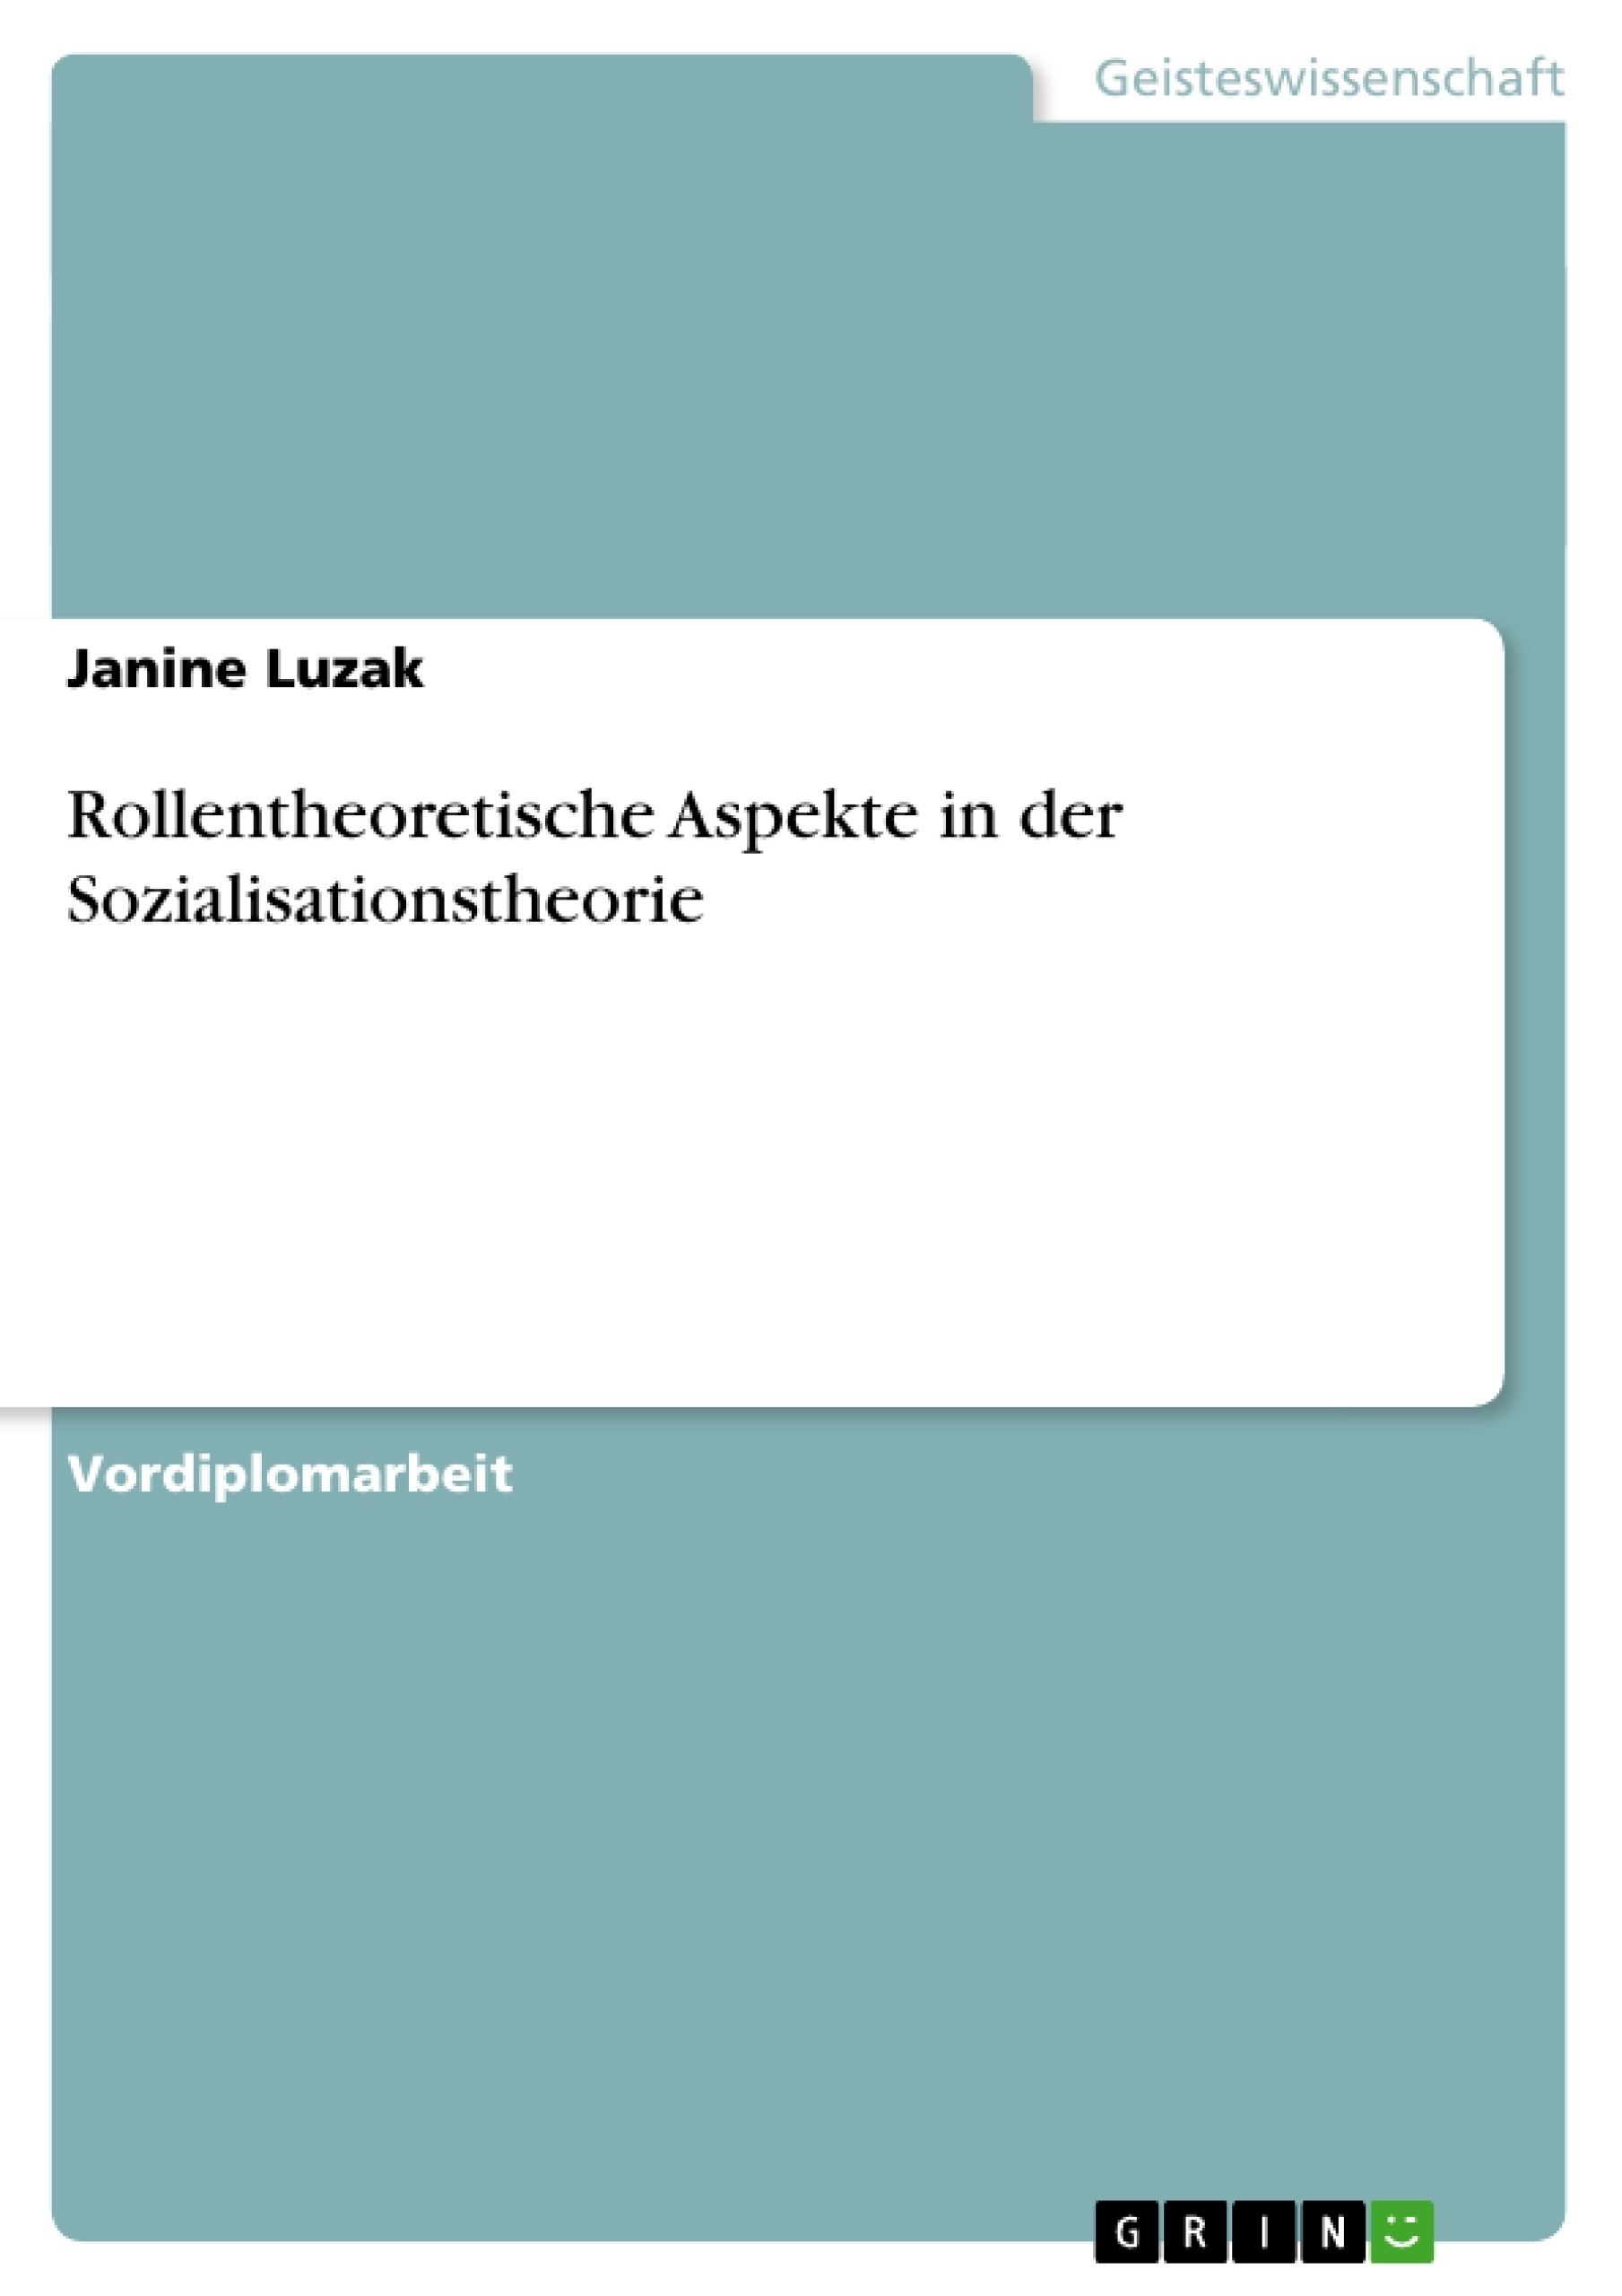 Title: Rollentheoretische Aspekte in der Sozialisationstheorie